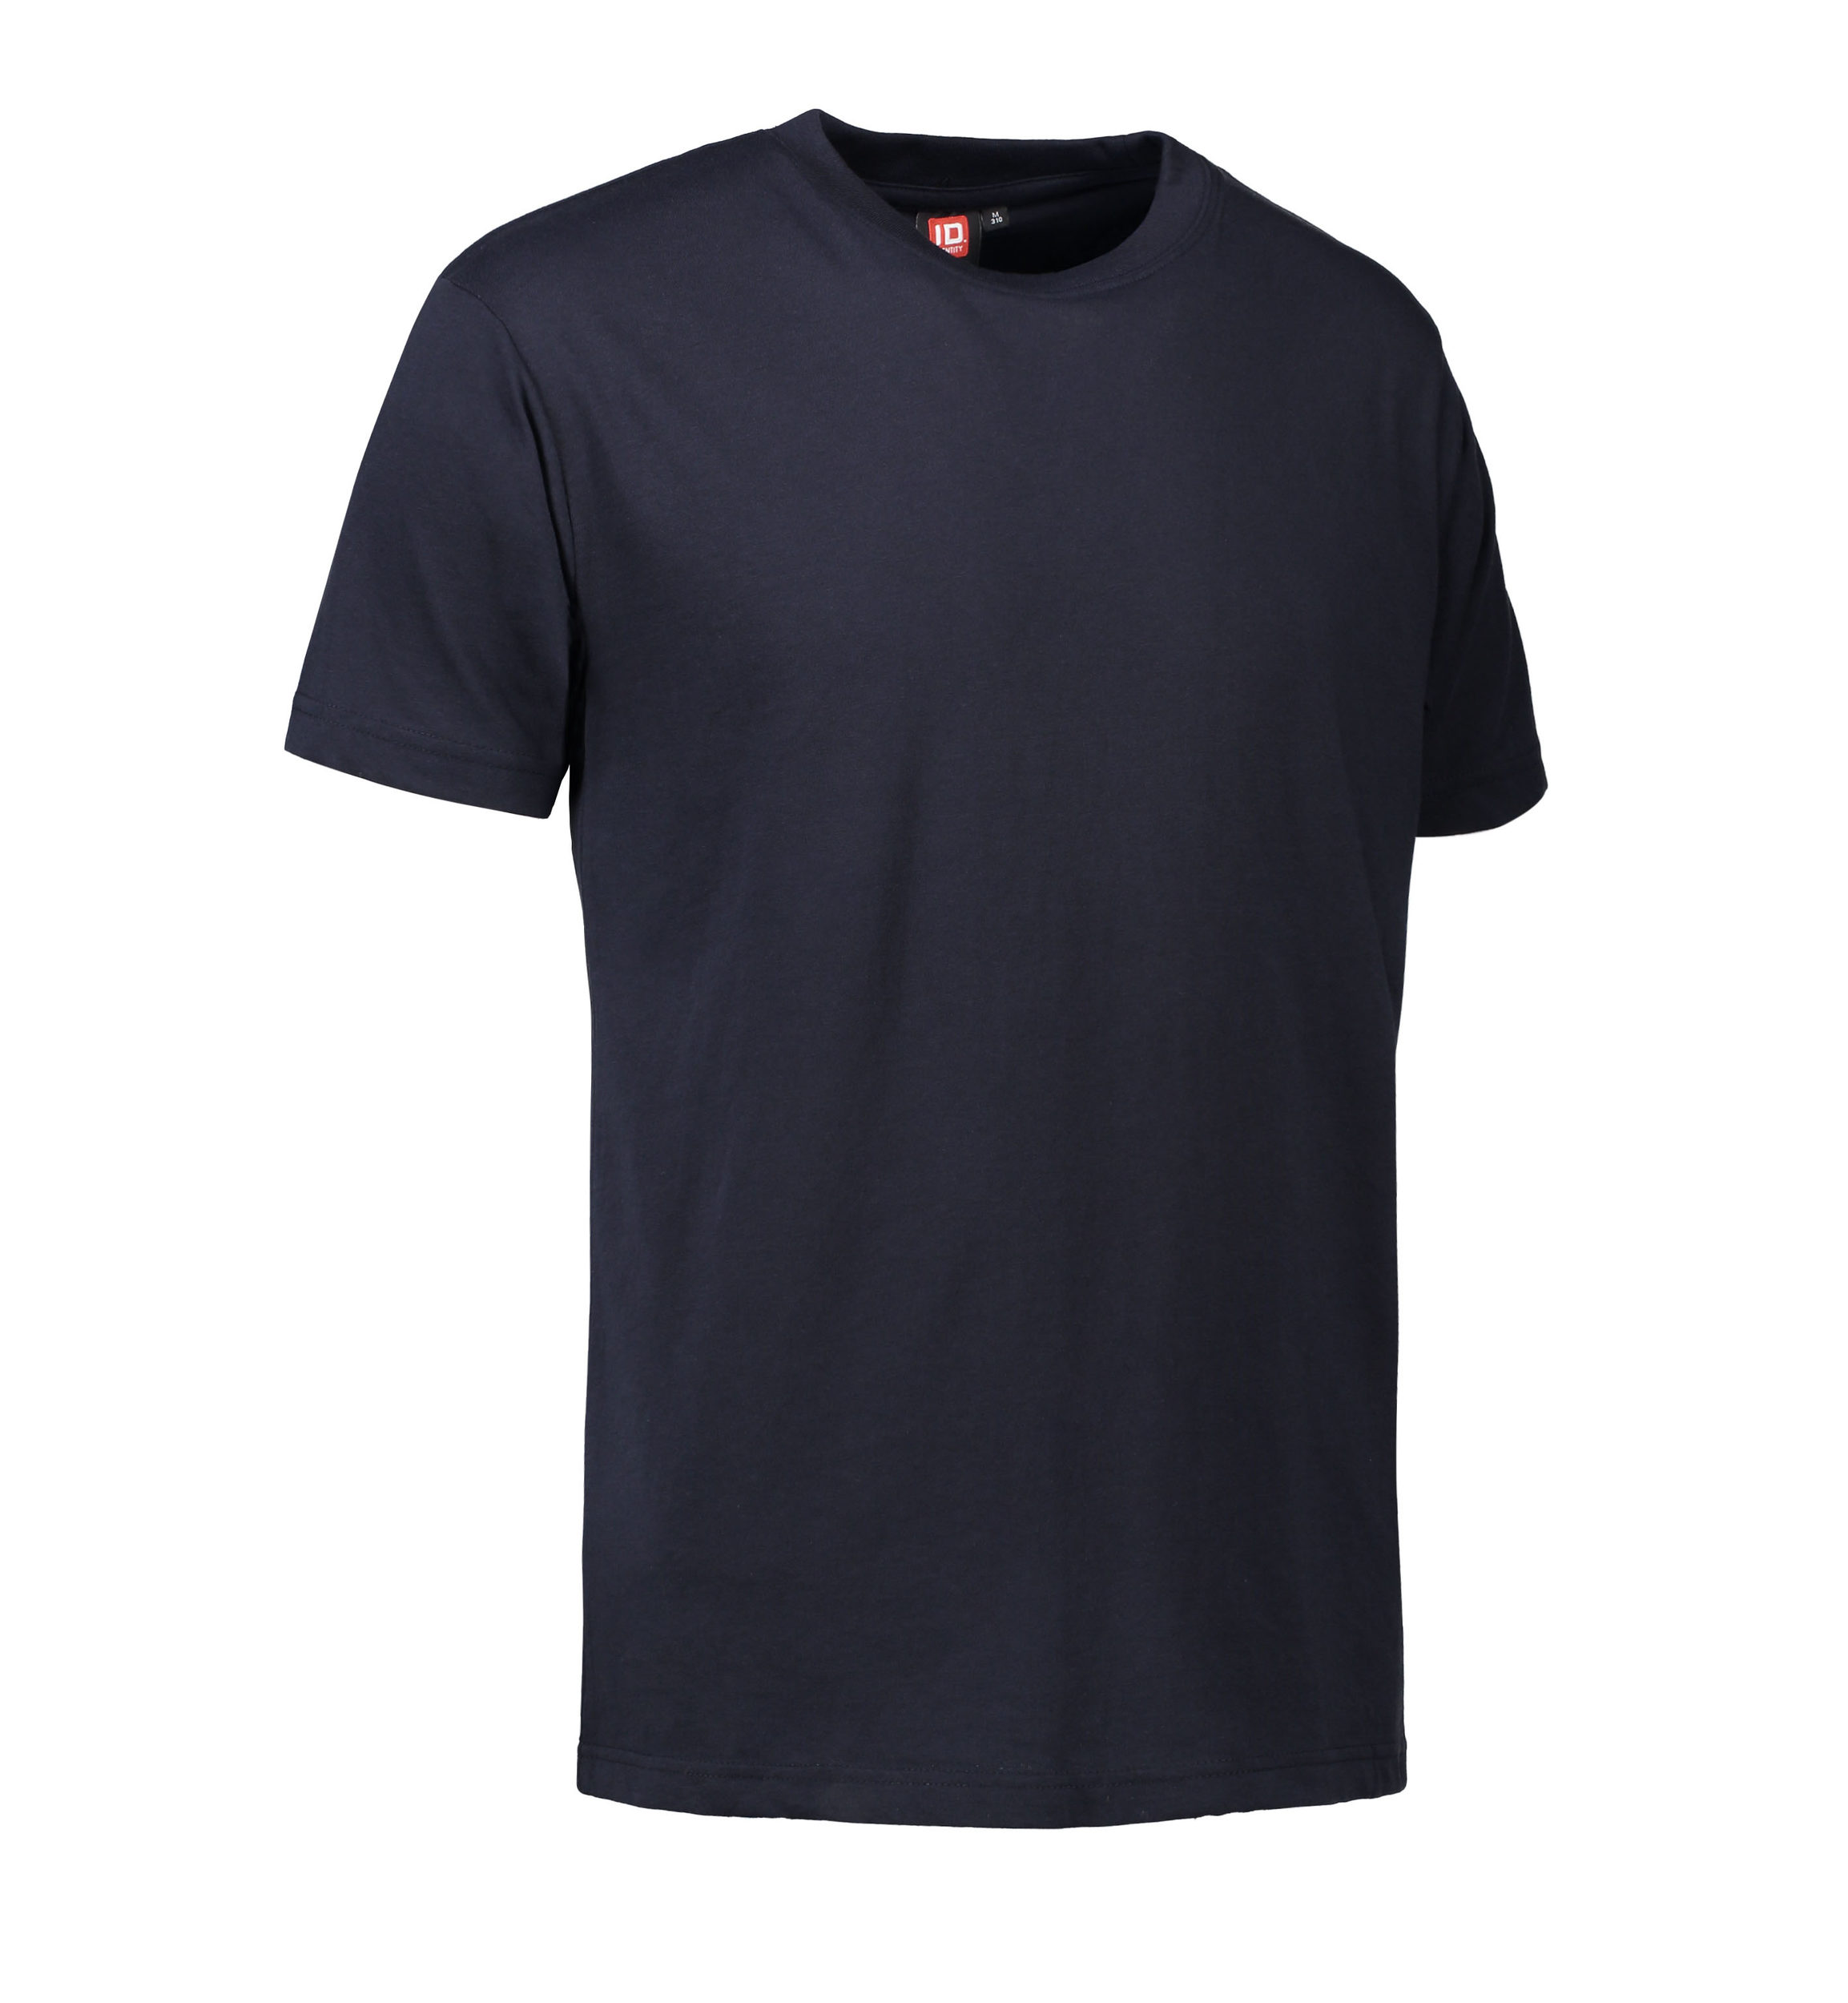 Billede af Slidstærk t-shirt i navy til mænd - XS hos Sygeplejebutikken.dk